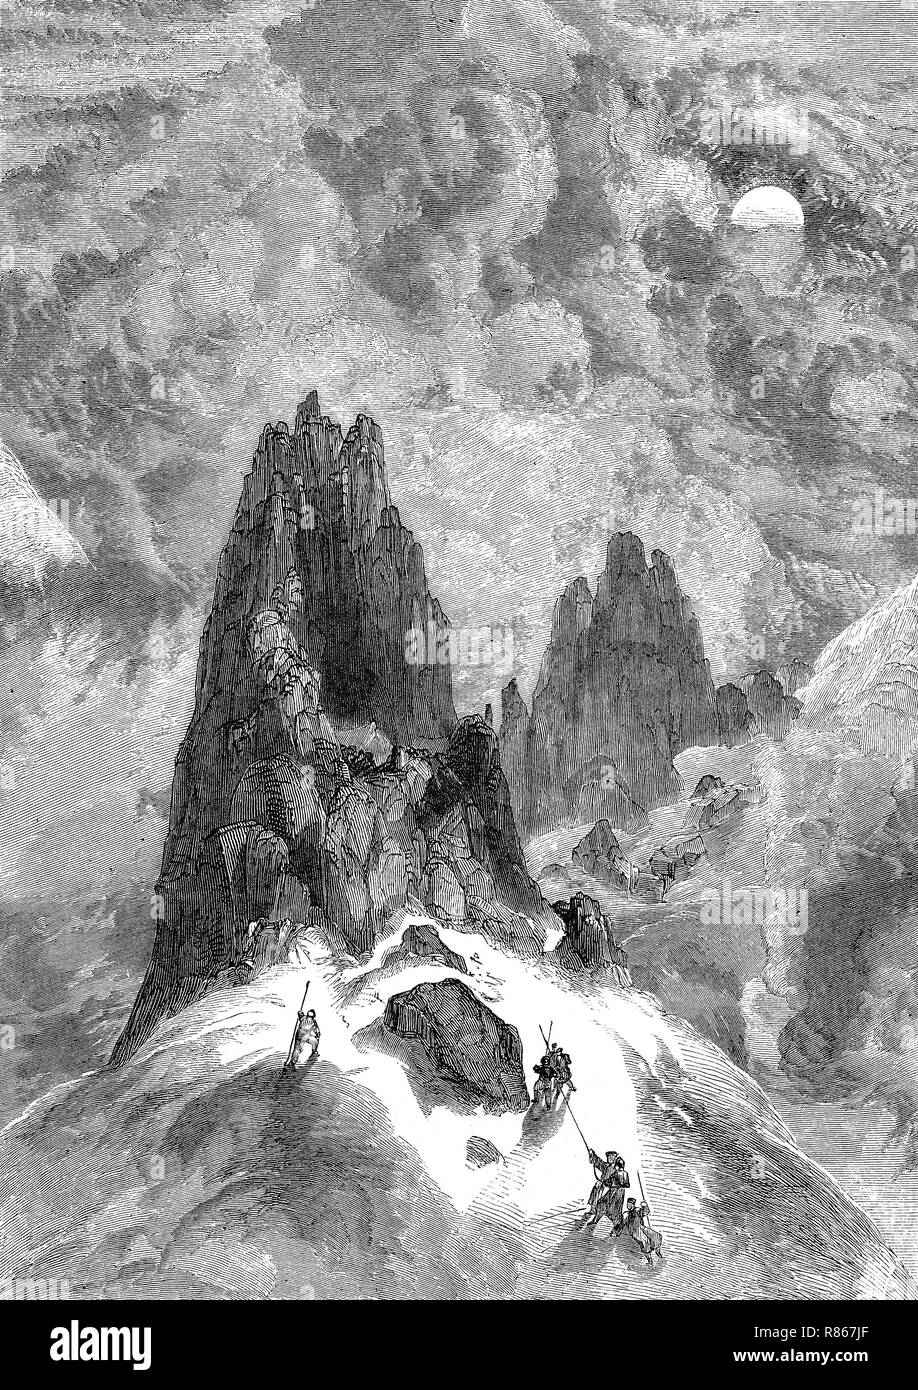 L'amélioration de la reproduction numérique, grimper sur la montagne Montblanc, France, Bergsteiger suis Montblanc, Frankreich, à partir d'un tirage original de l'année 1855 Banque D'Images